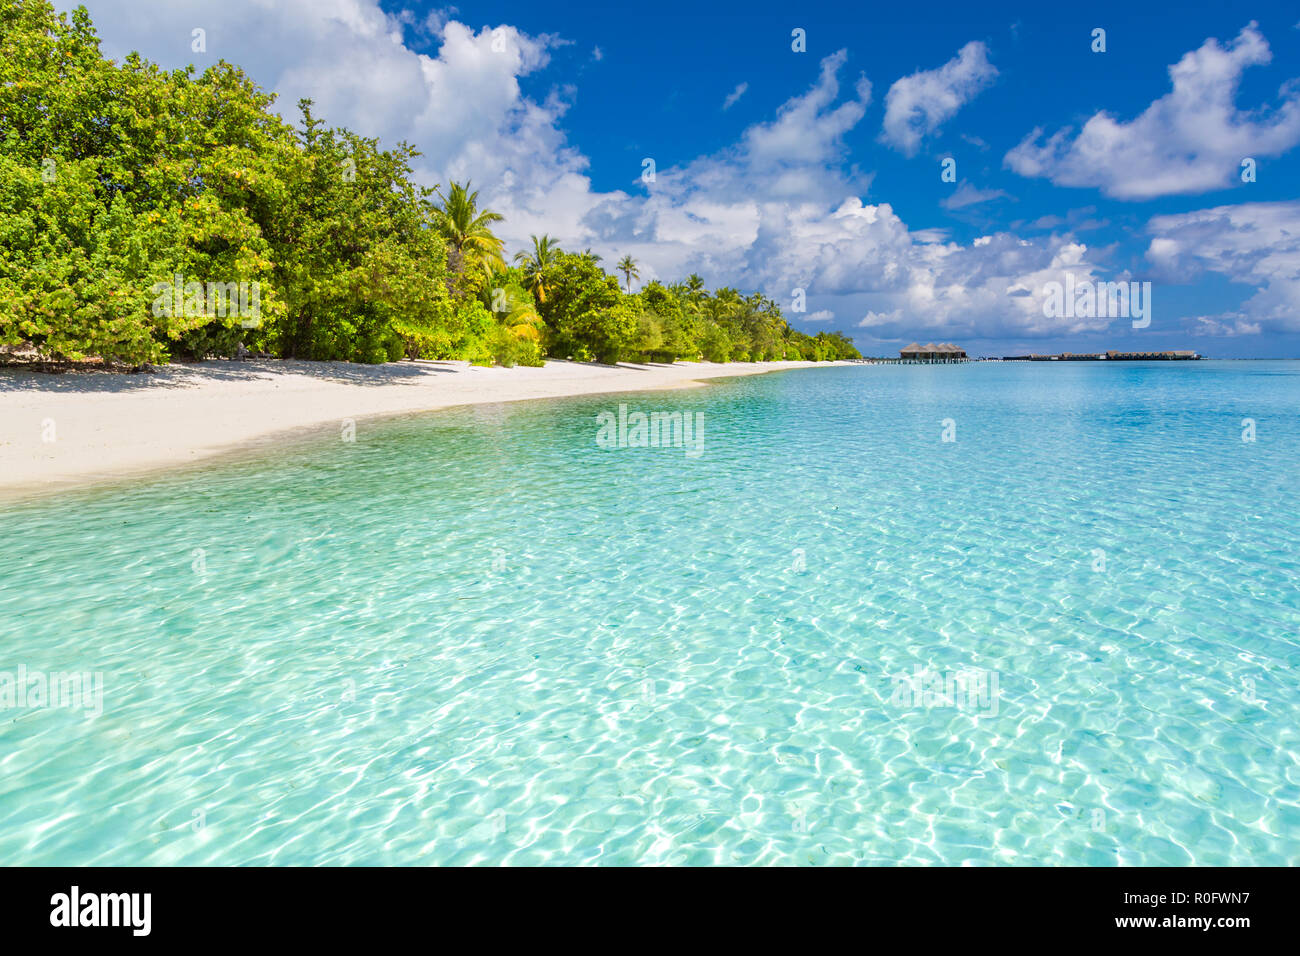 Strand, Natur, Landschaft der Malediven mit blaues Meer, blauer Himmel und Palmen am weißen Sandstrand. Perfekte tropische Szene Stockfoto